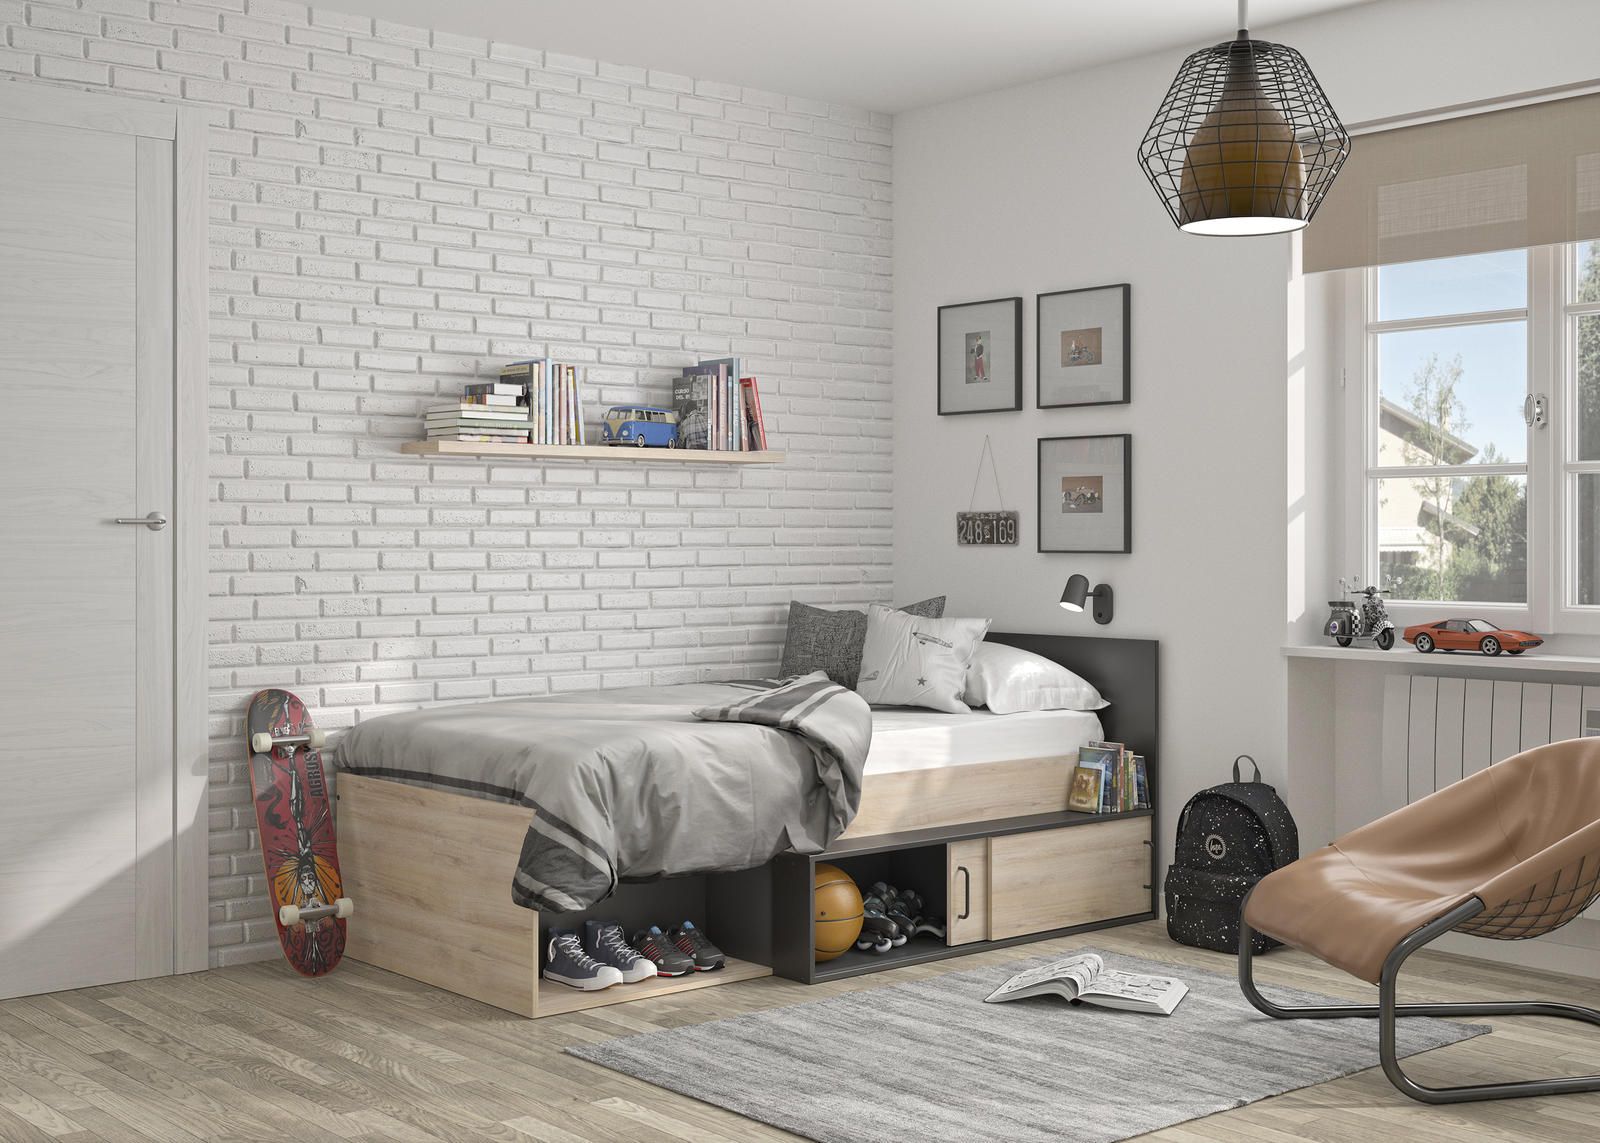 Aldo Kompaktní dětská postel v industriálním designu Erquy - Nábytek ALDO